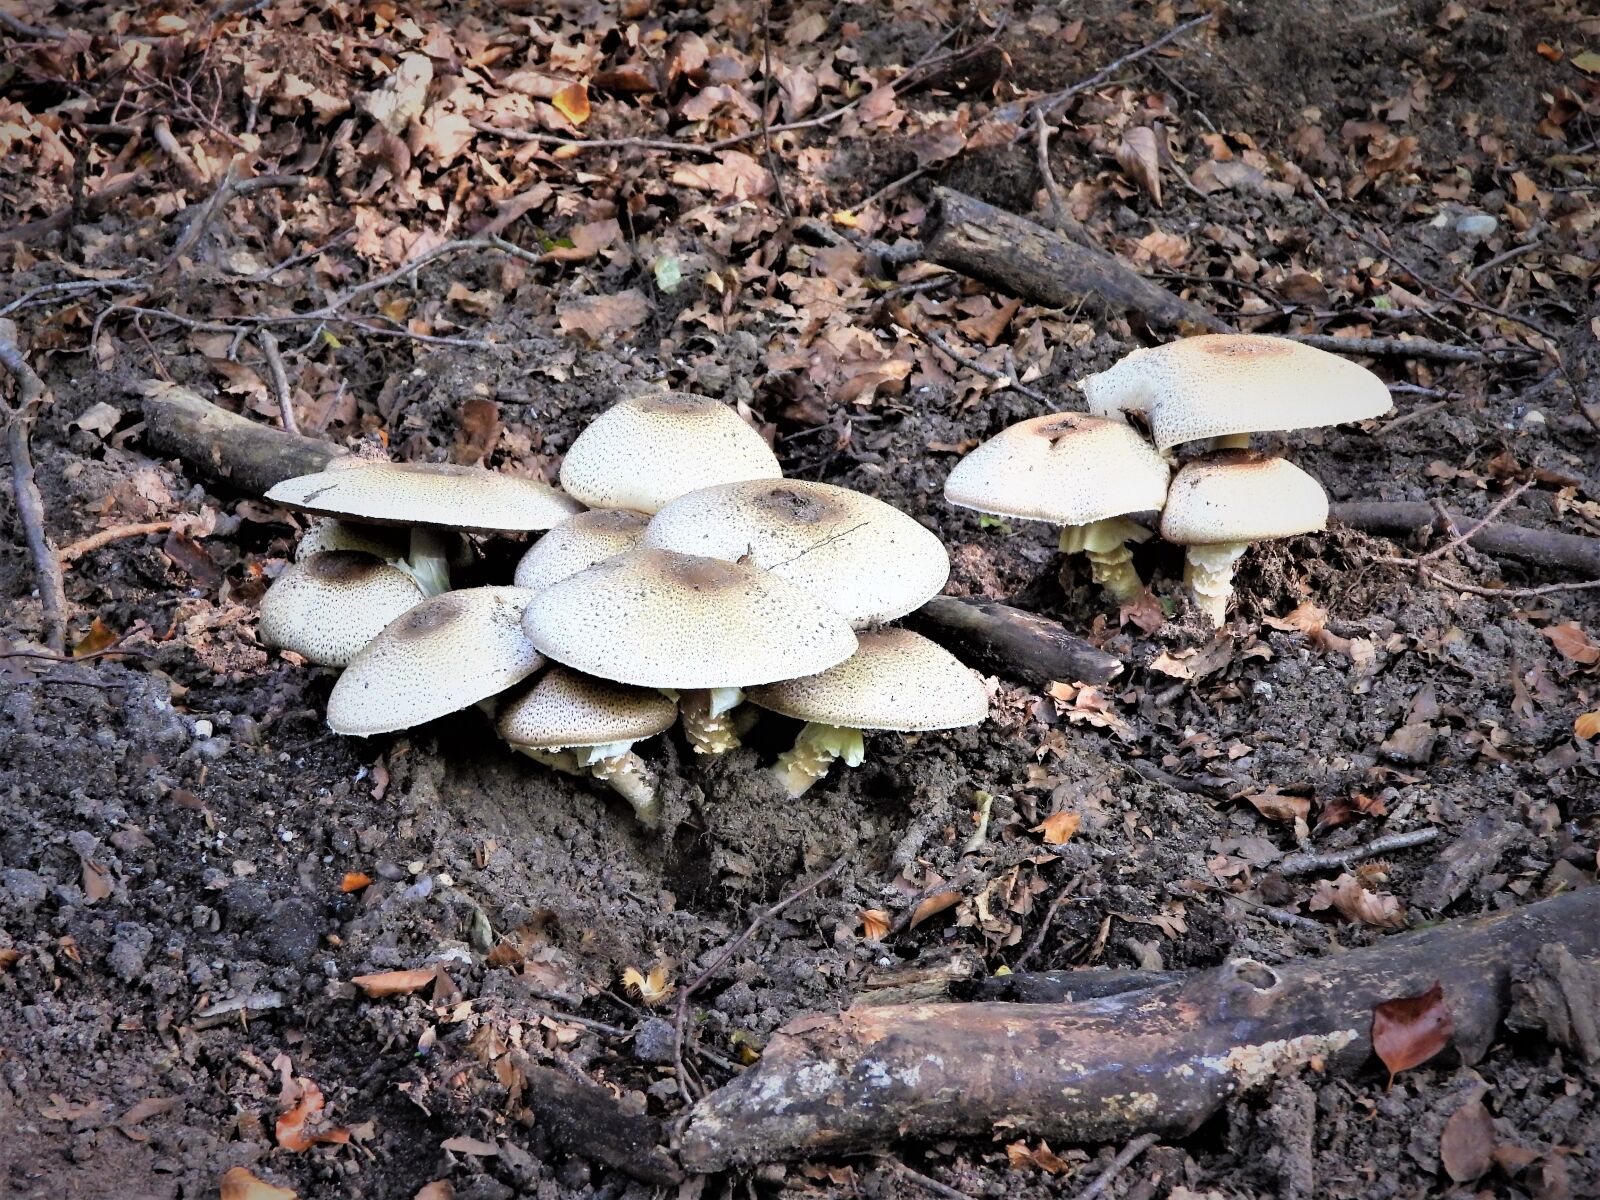 Nikon Coolpix P1000 sample photo. Mushrooms, nature, autumn photography